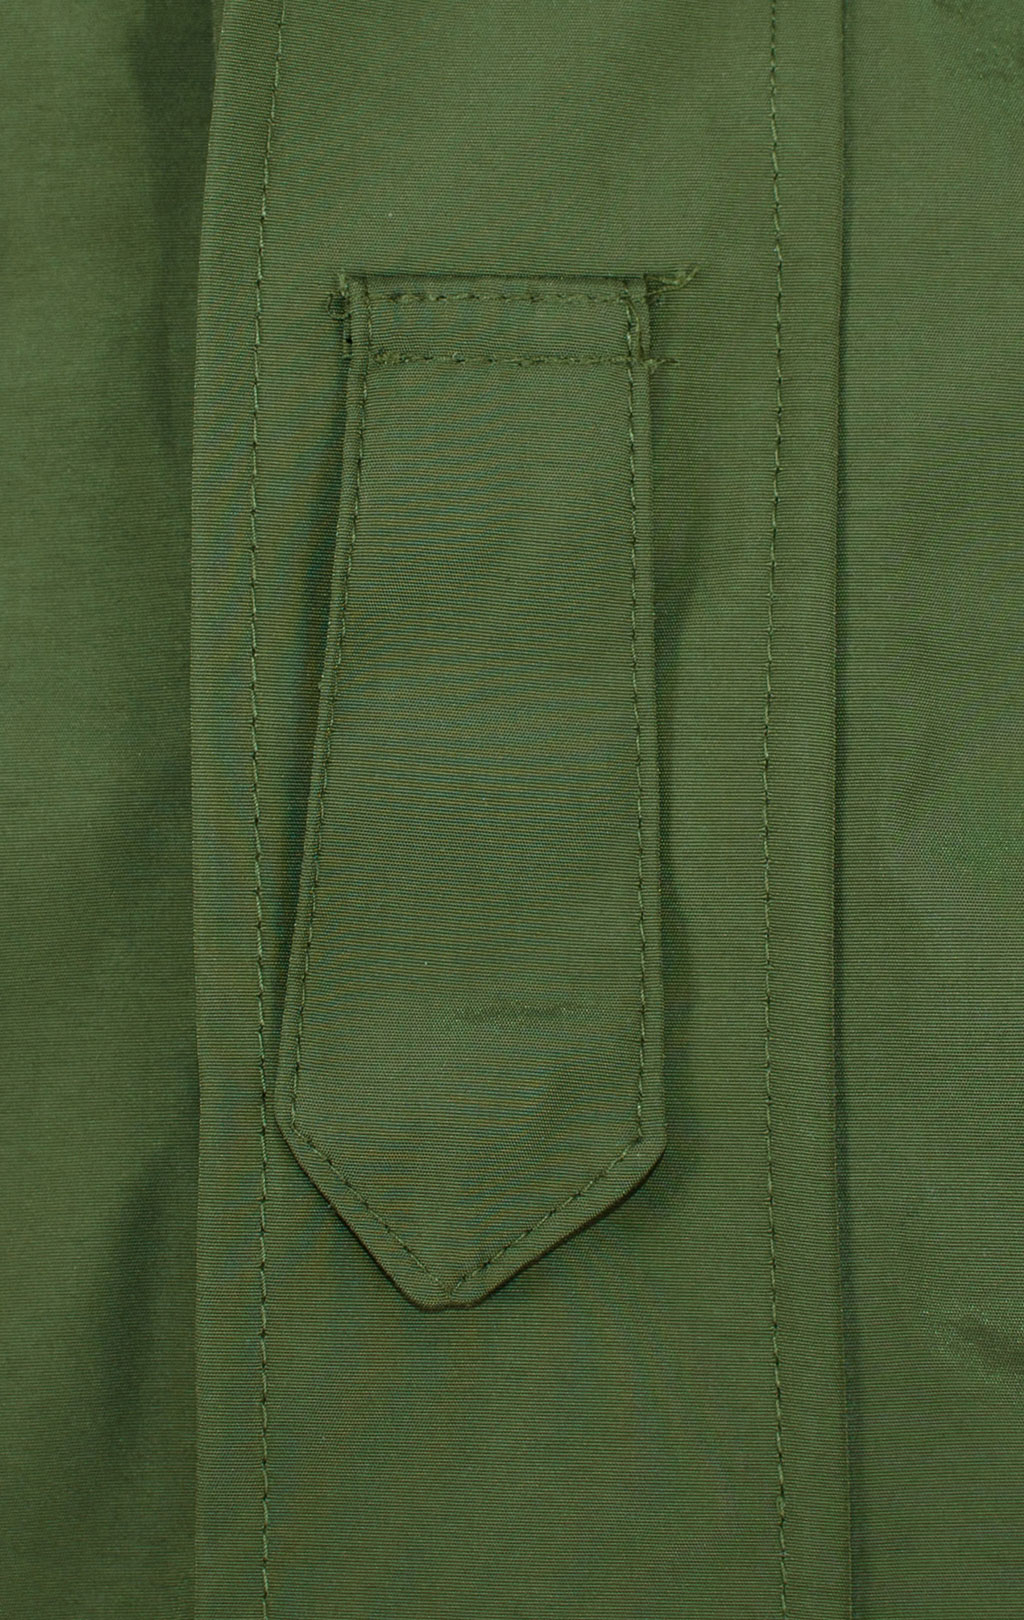 Куртка непромокаемая Mil-Tec мембрана olive 